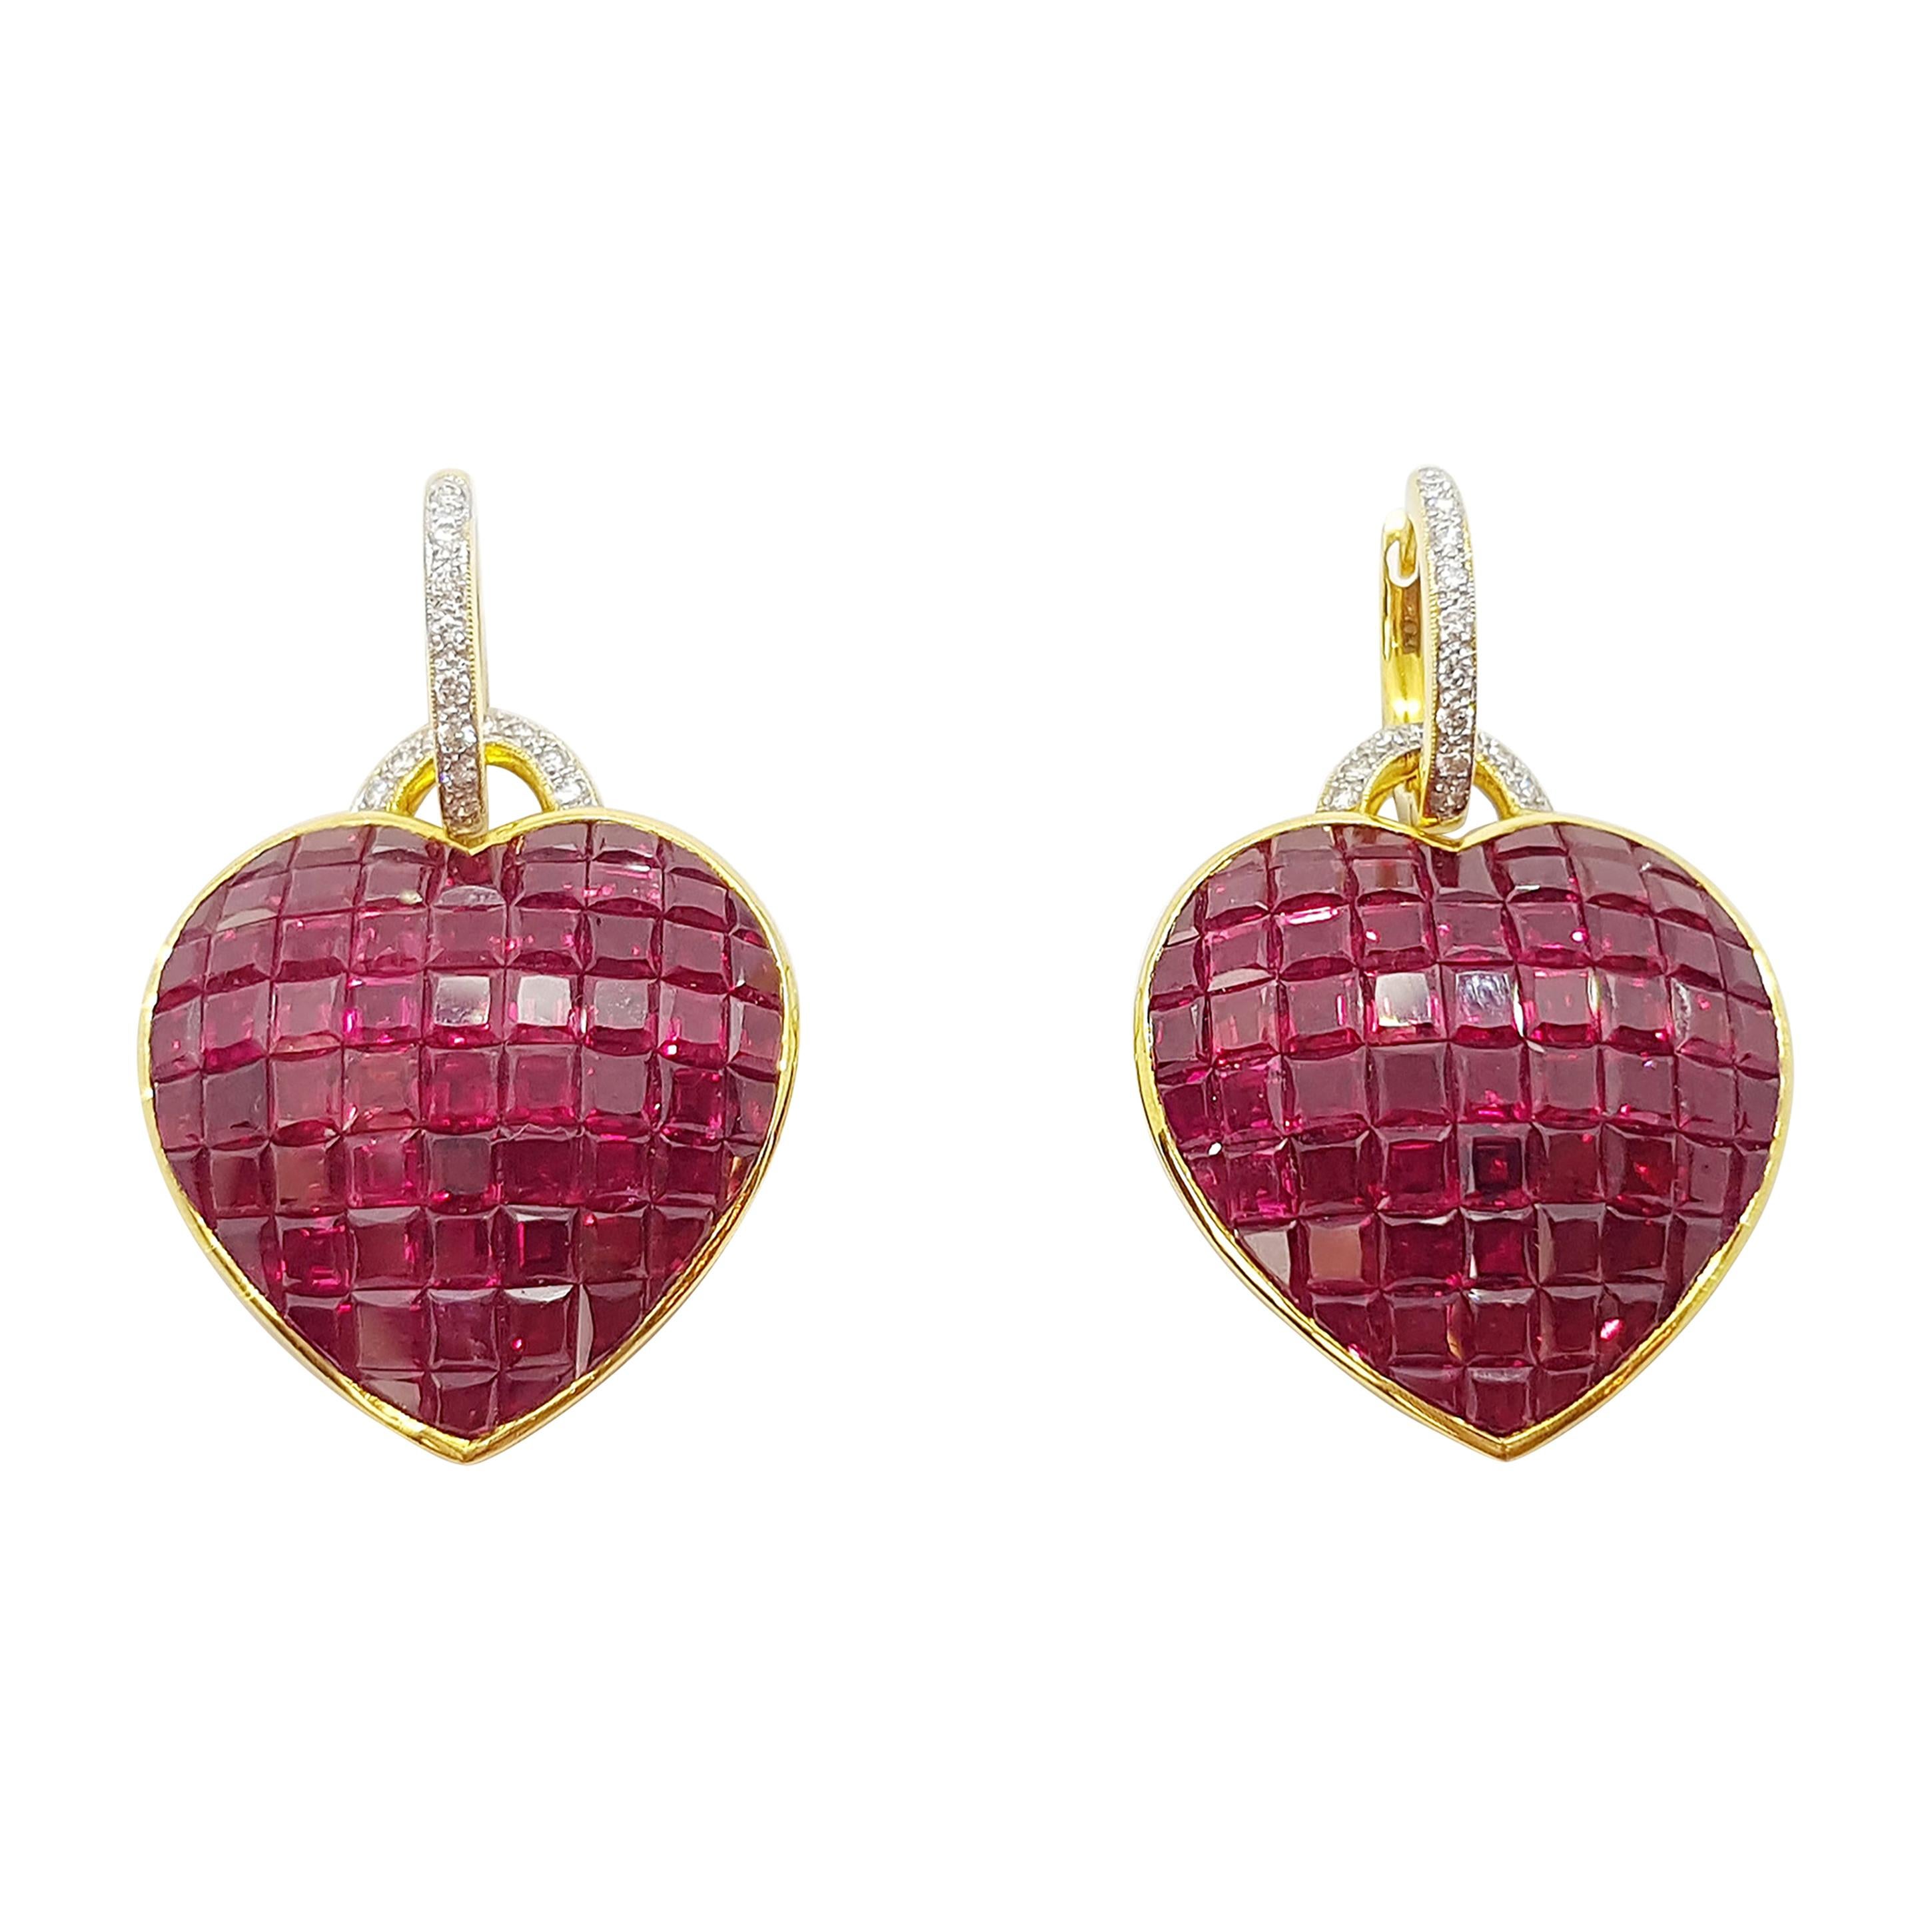 Ruby with Diamond Heart Earrings Set in 18 Karat Gold Settings